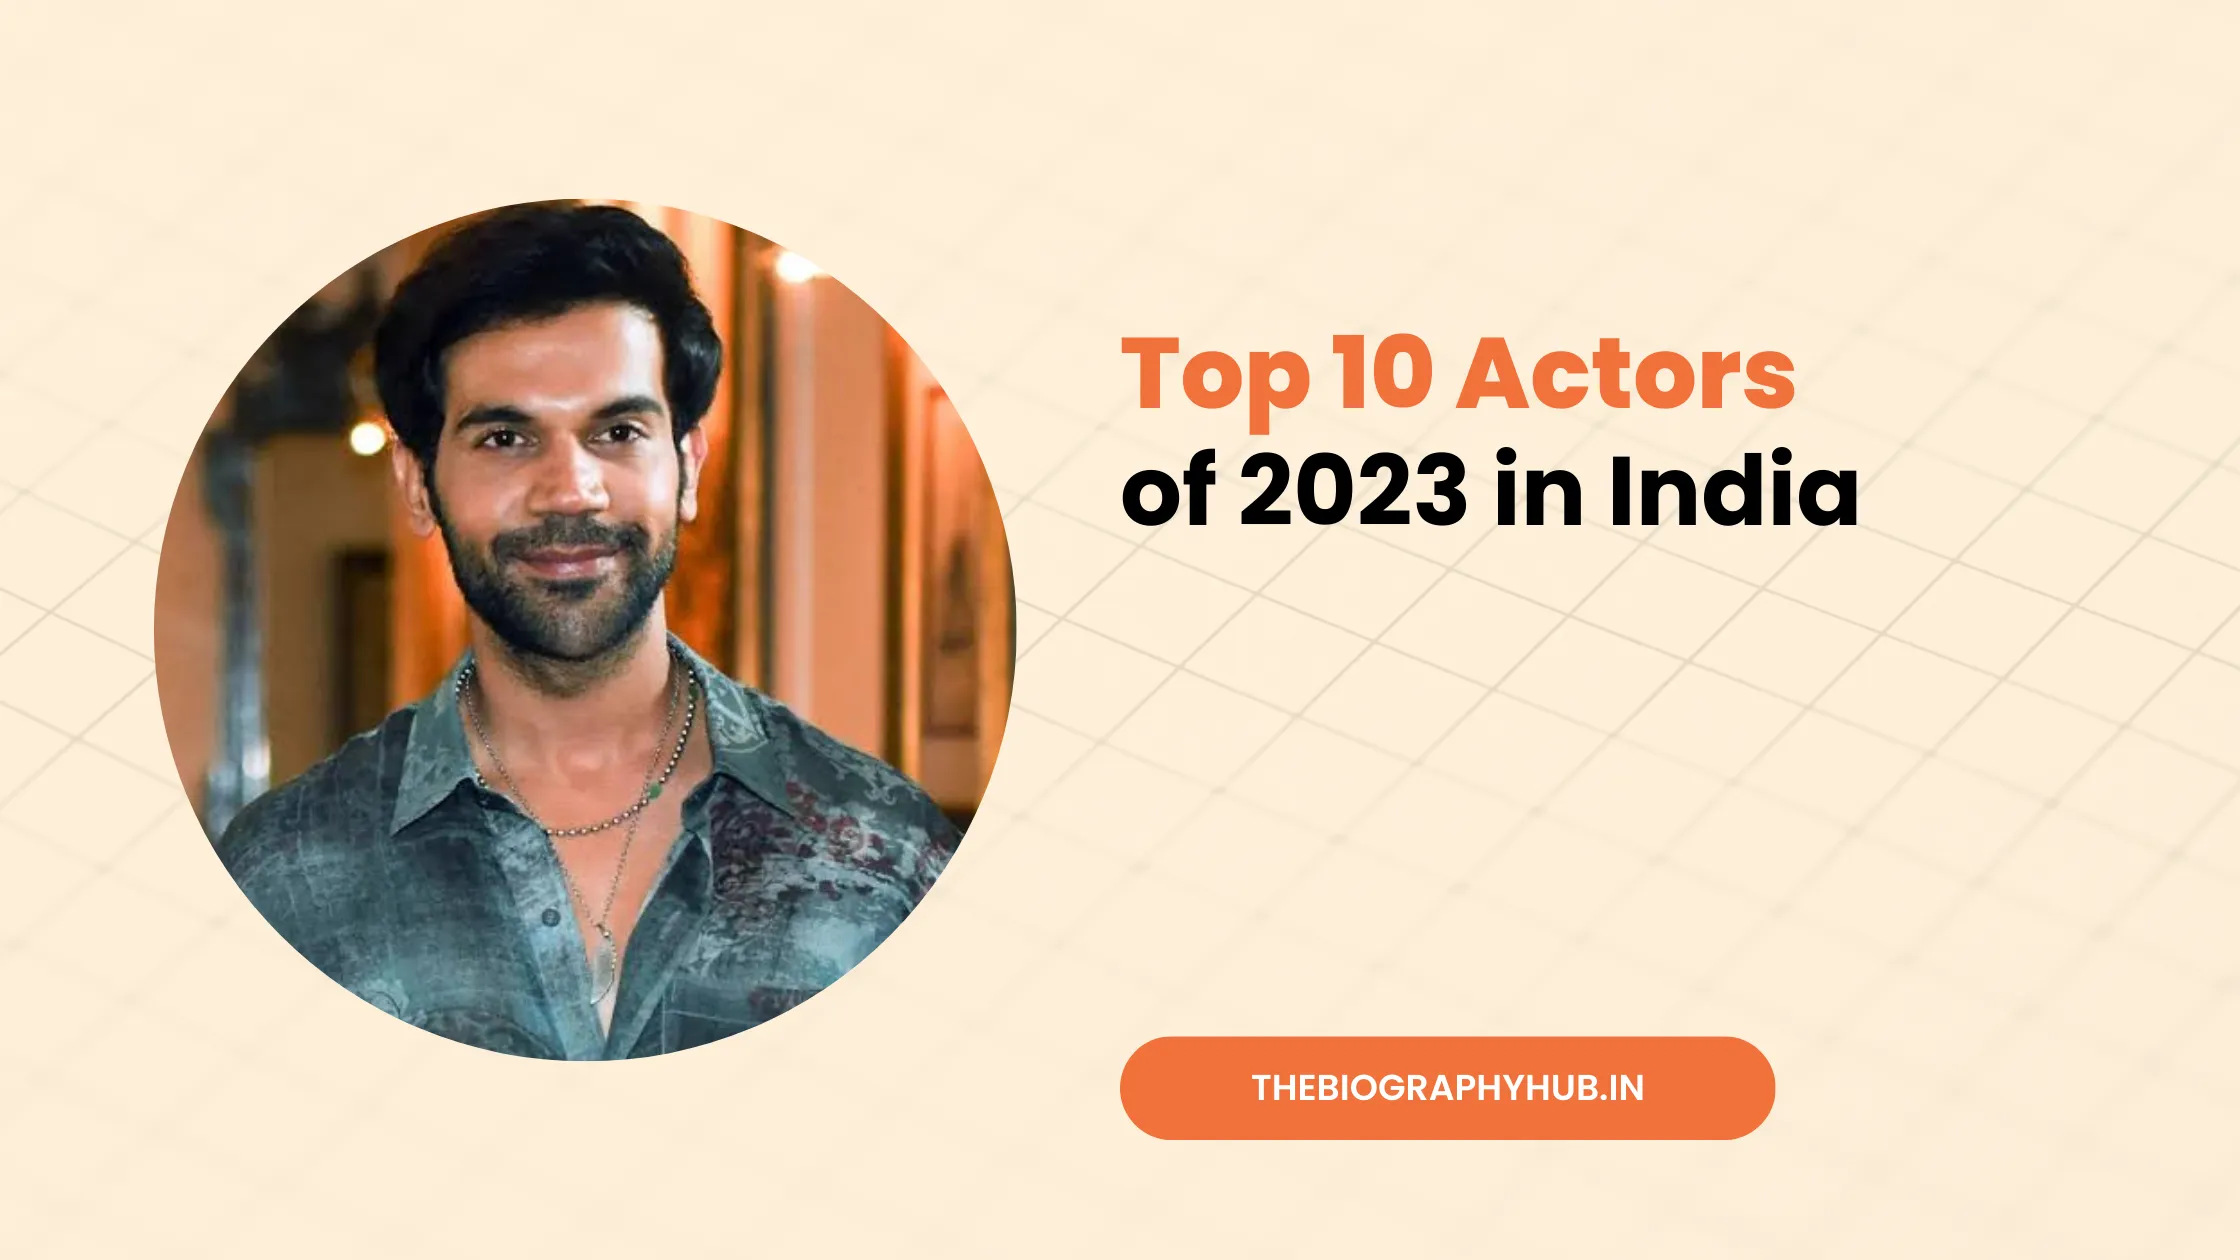 Top 10 Actors of 2023 in India